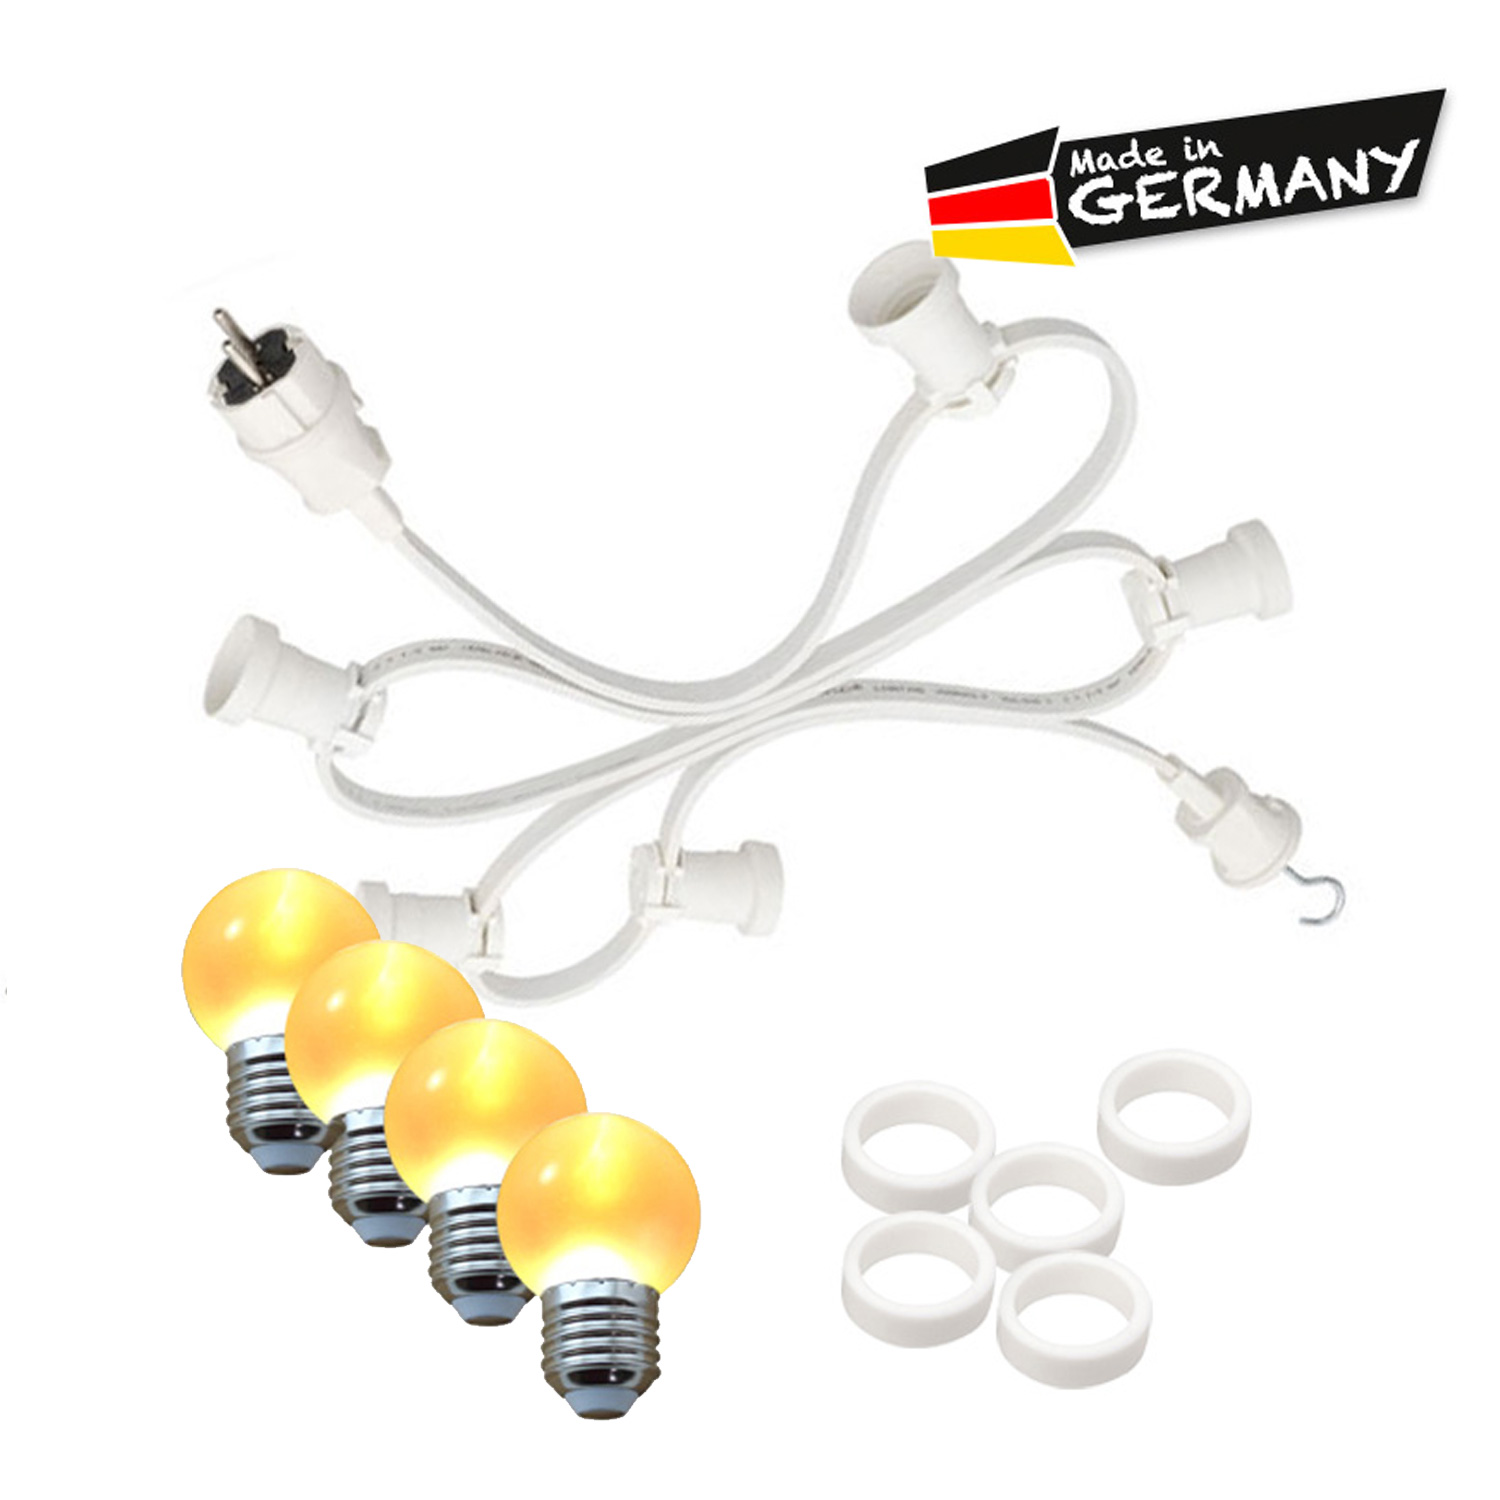 Illu-/Partylichterkette 30m - Außenlichterkette - Made in Germany - 30 x ultra-warmweiße LED Kugeln